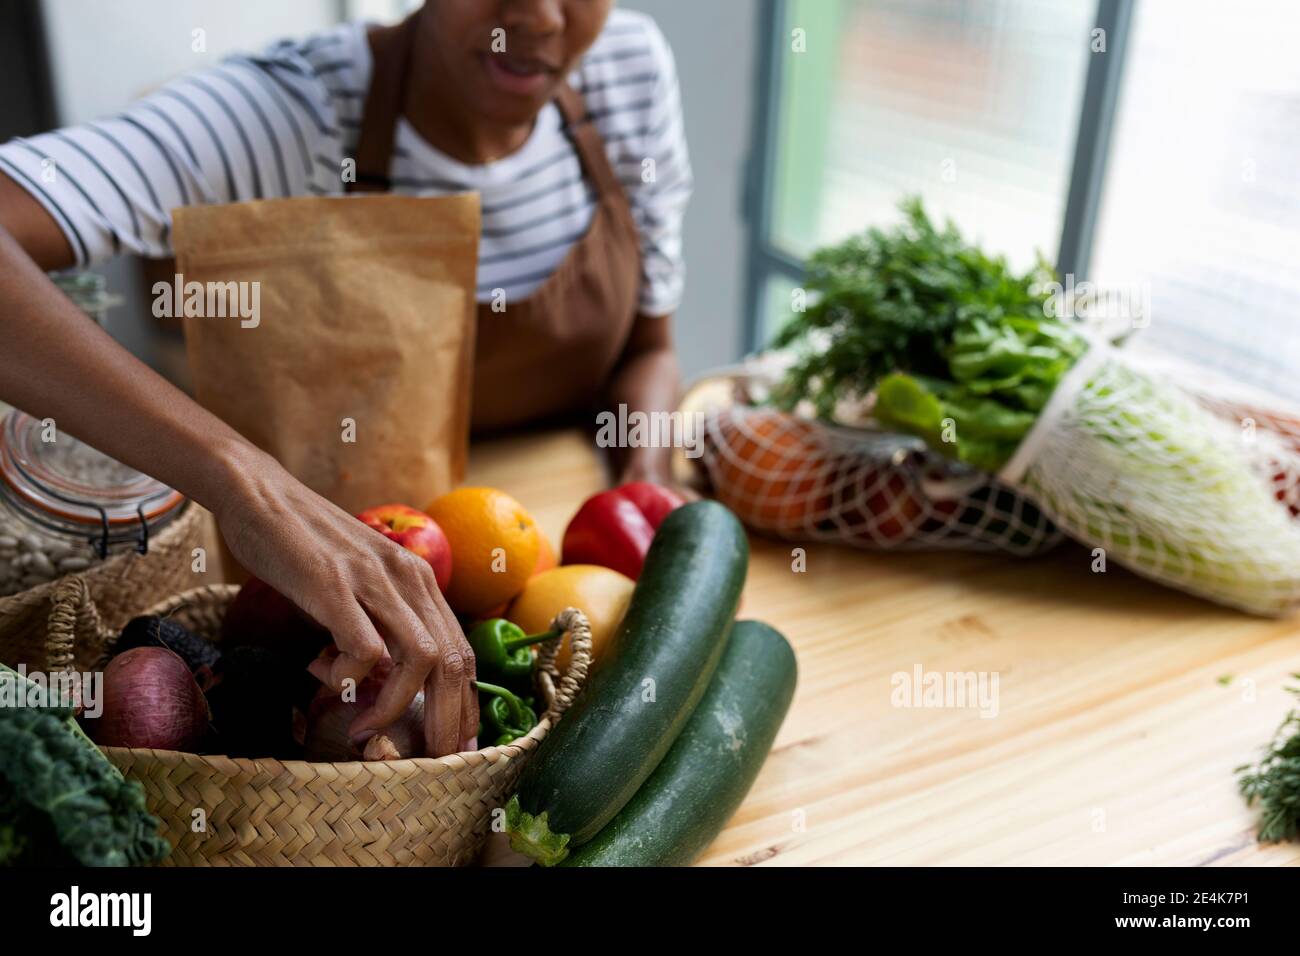 Frau mit Schürze in der Küche, Auspacken frisch gekauftes Bio-Obst und Gemüse Stockfoto